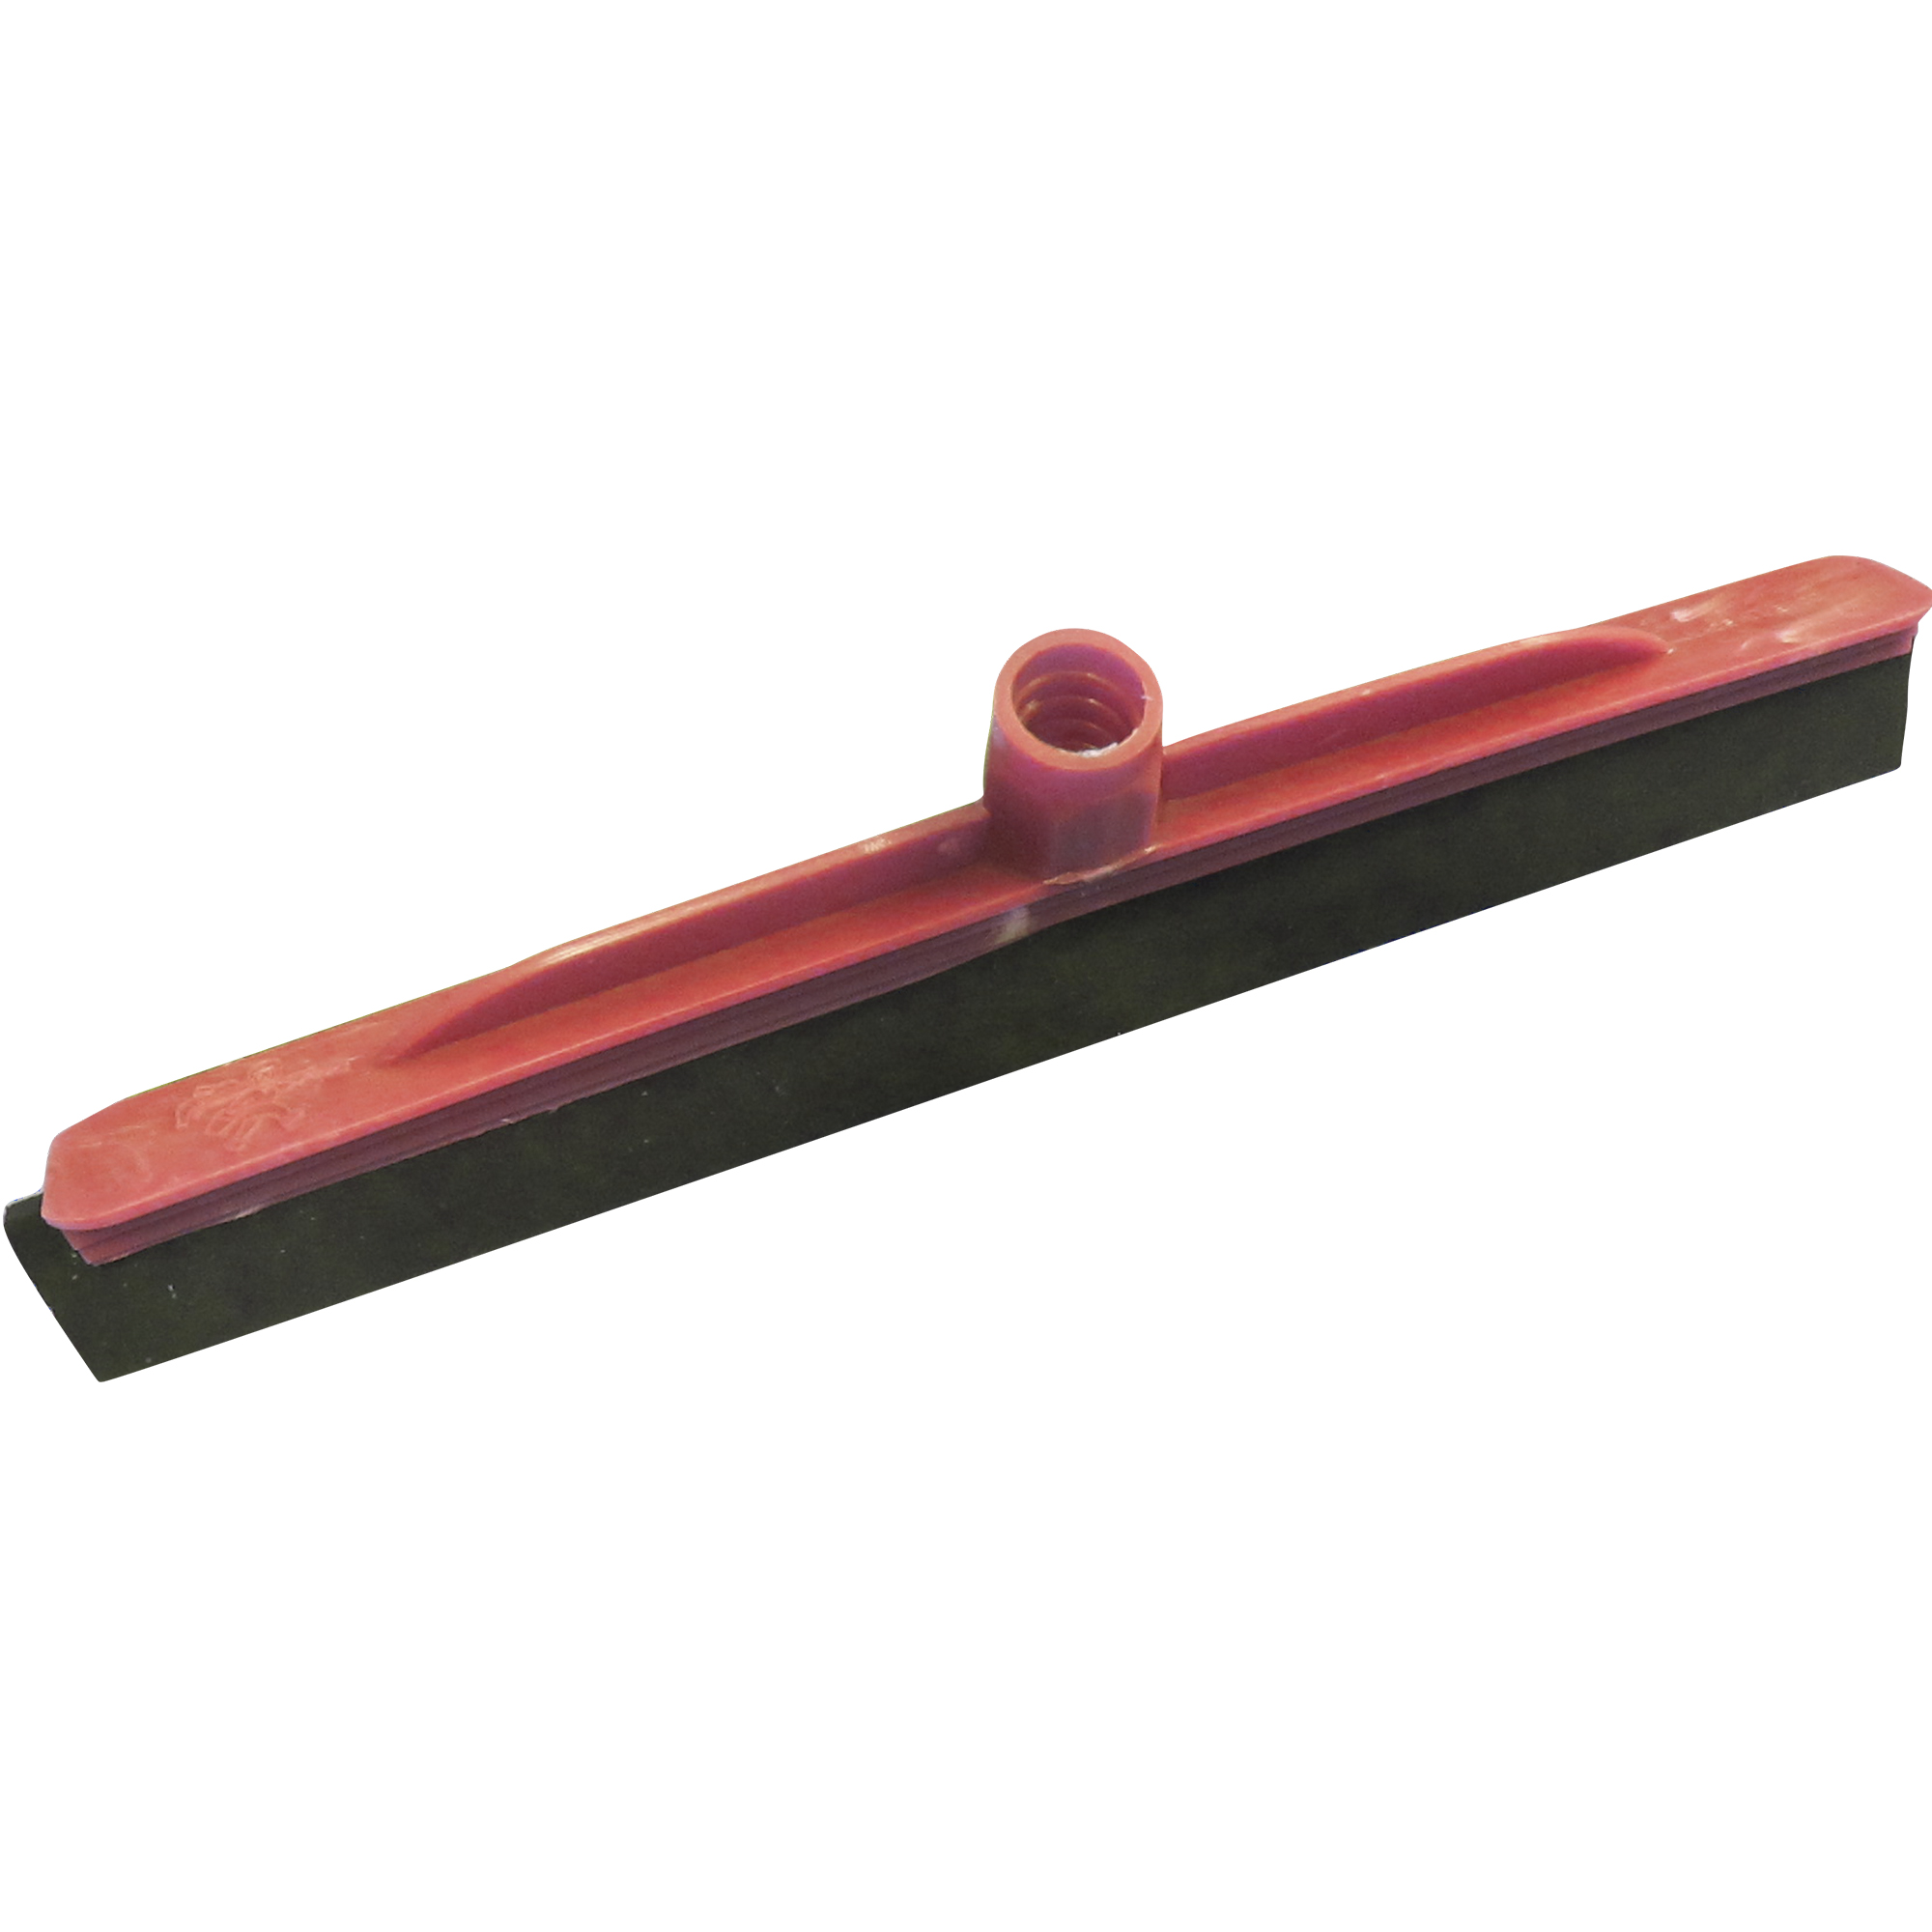 Jalador de goma y estructura de plástico color rojo con 40 centímetros de longitud, no incluye bastón